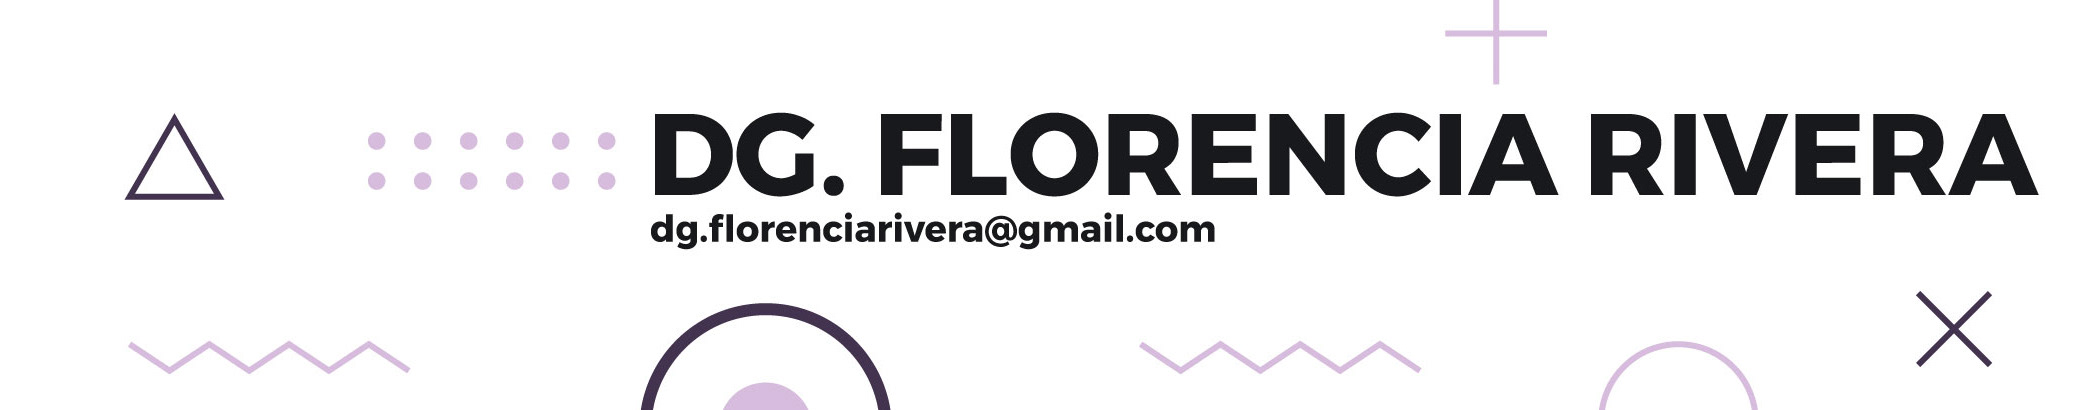 Florencia Rivera's profile banner